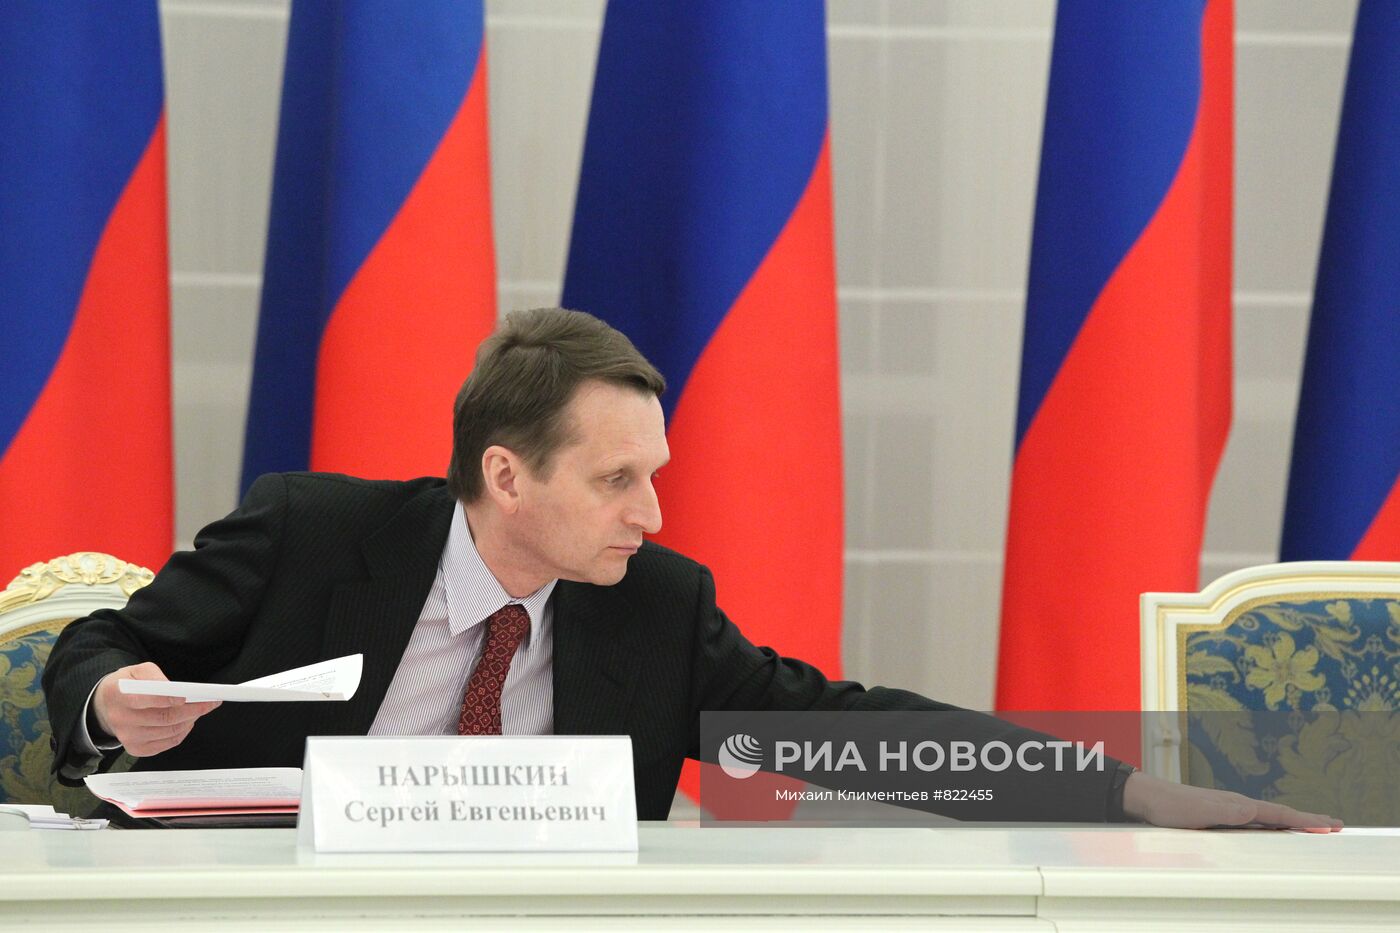 Д.Медведев встретился с судьями Конституционного суда РФ